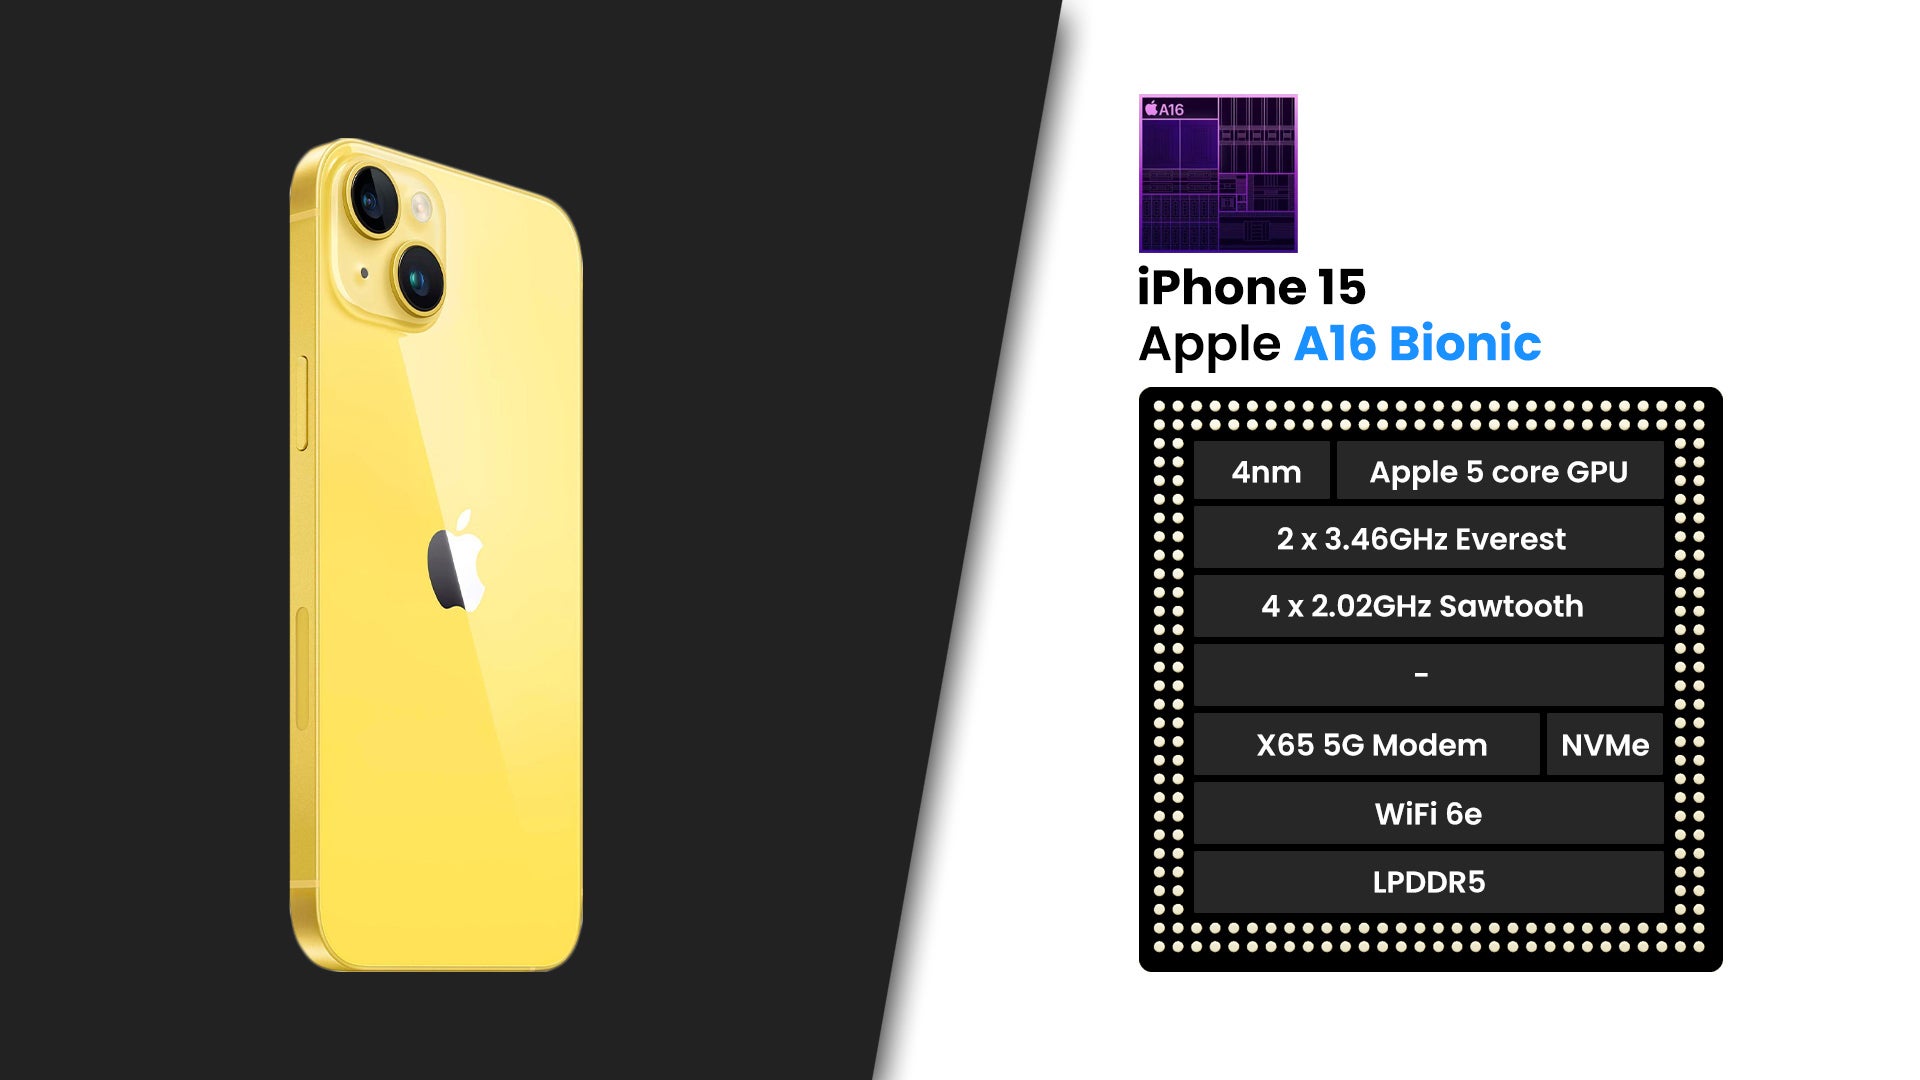 Pratinjau iPhone 15: akankah flagship dasar Apple menawarkan lebih banyak kali ini?